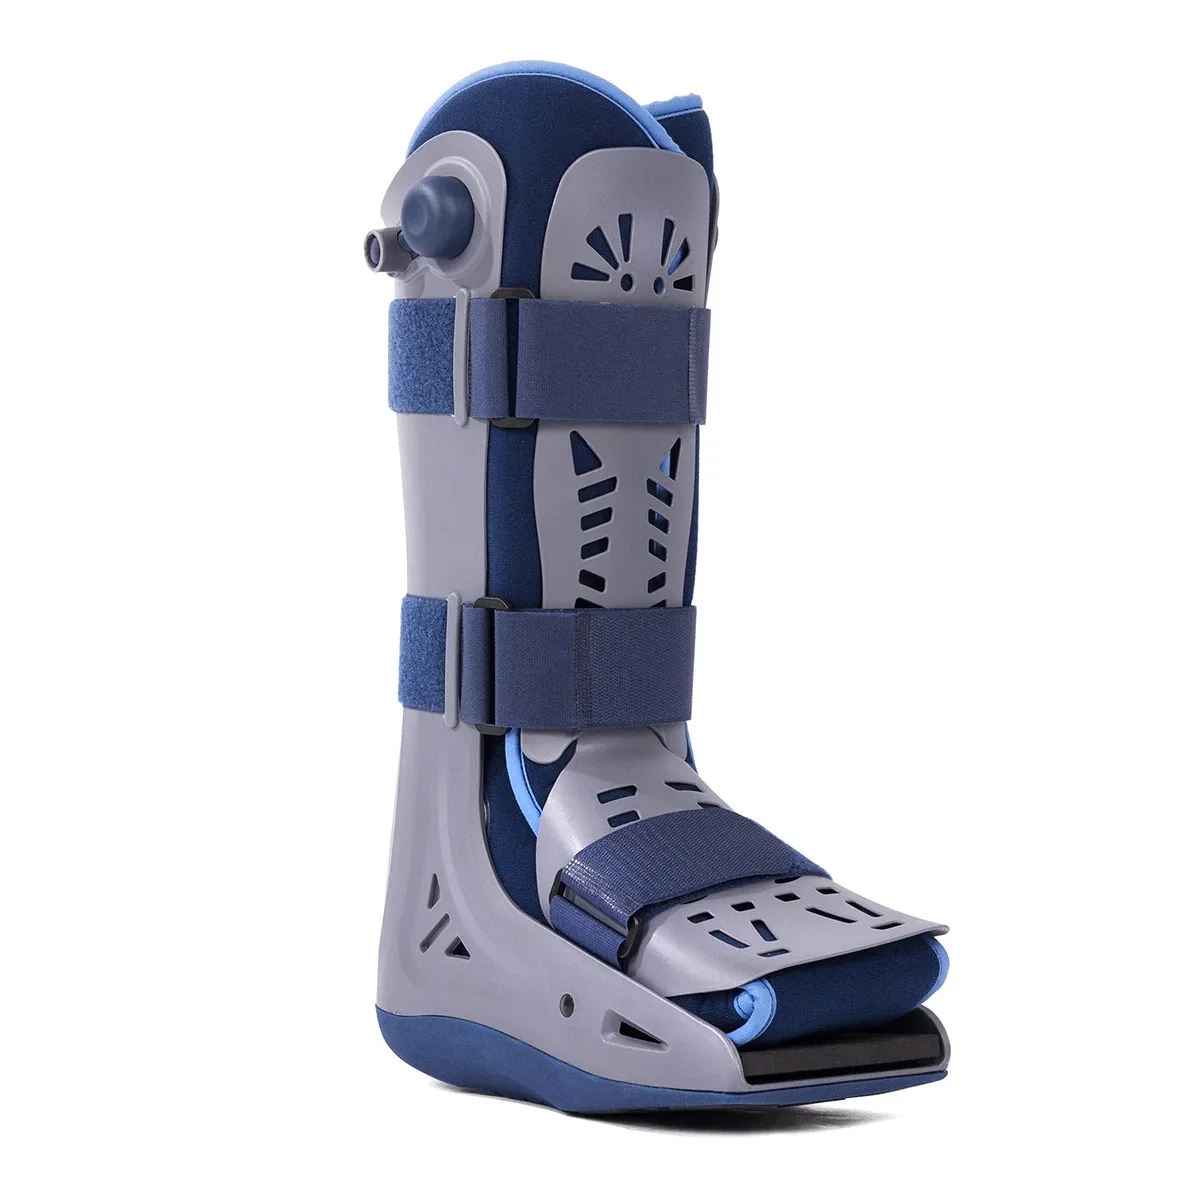 Aero da passeggio gonfiabile per lesioni al piede e alla caviglia ortopedico deambulatore stabilizzatore medico e ultraleggero